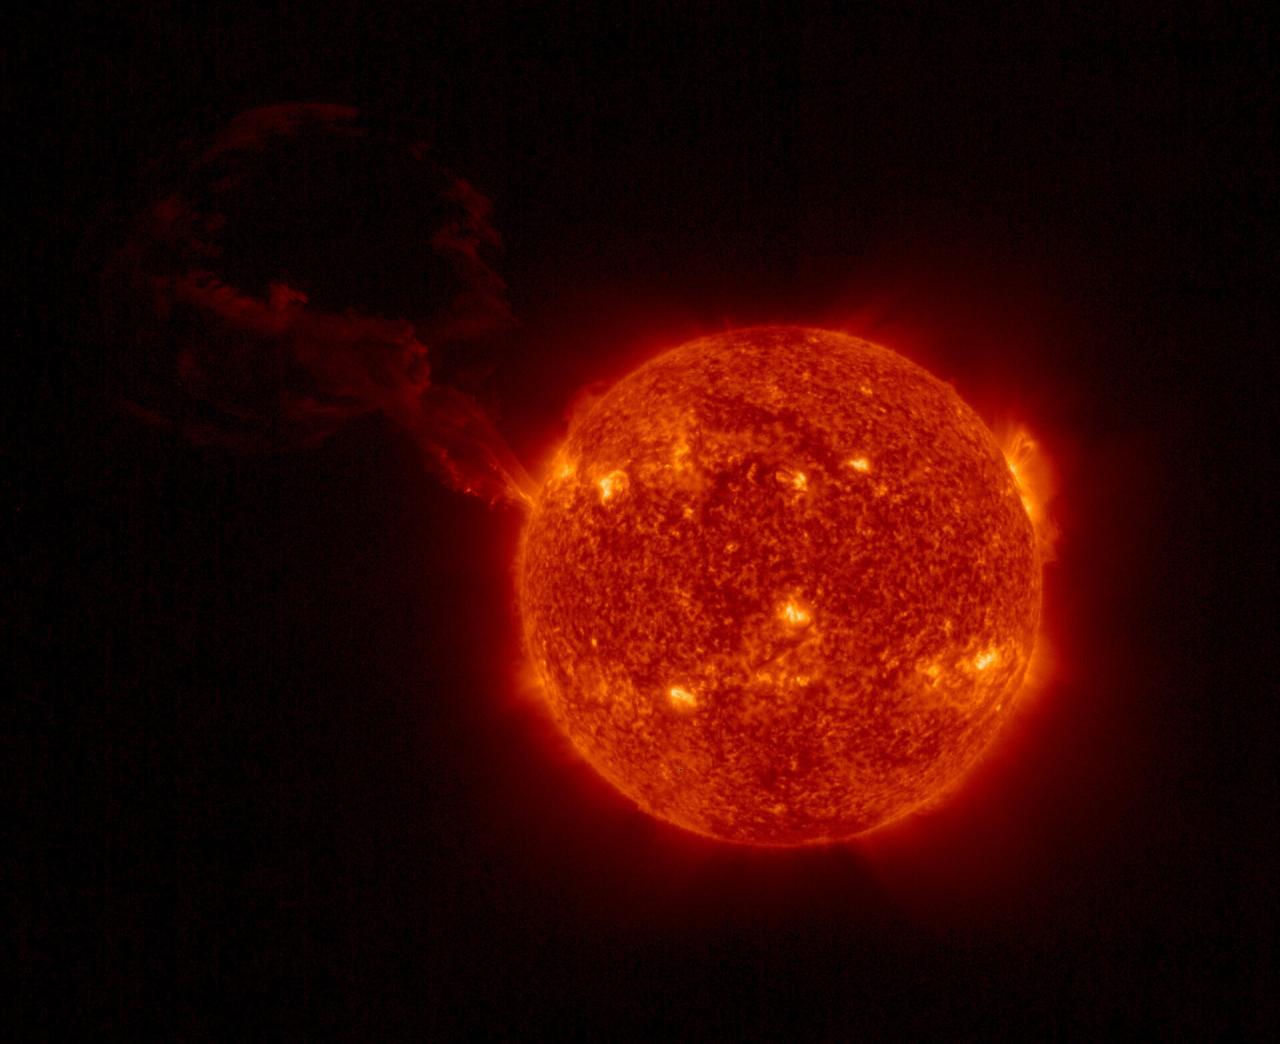 Una enorme erupción solar fue capturada por la nave espacial Solar Orbiter en febrero